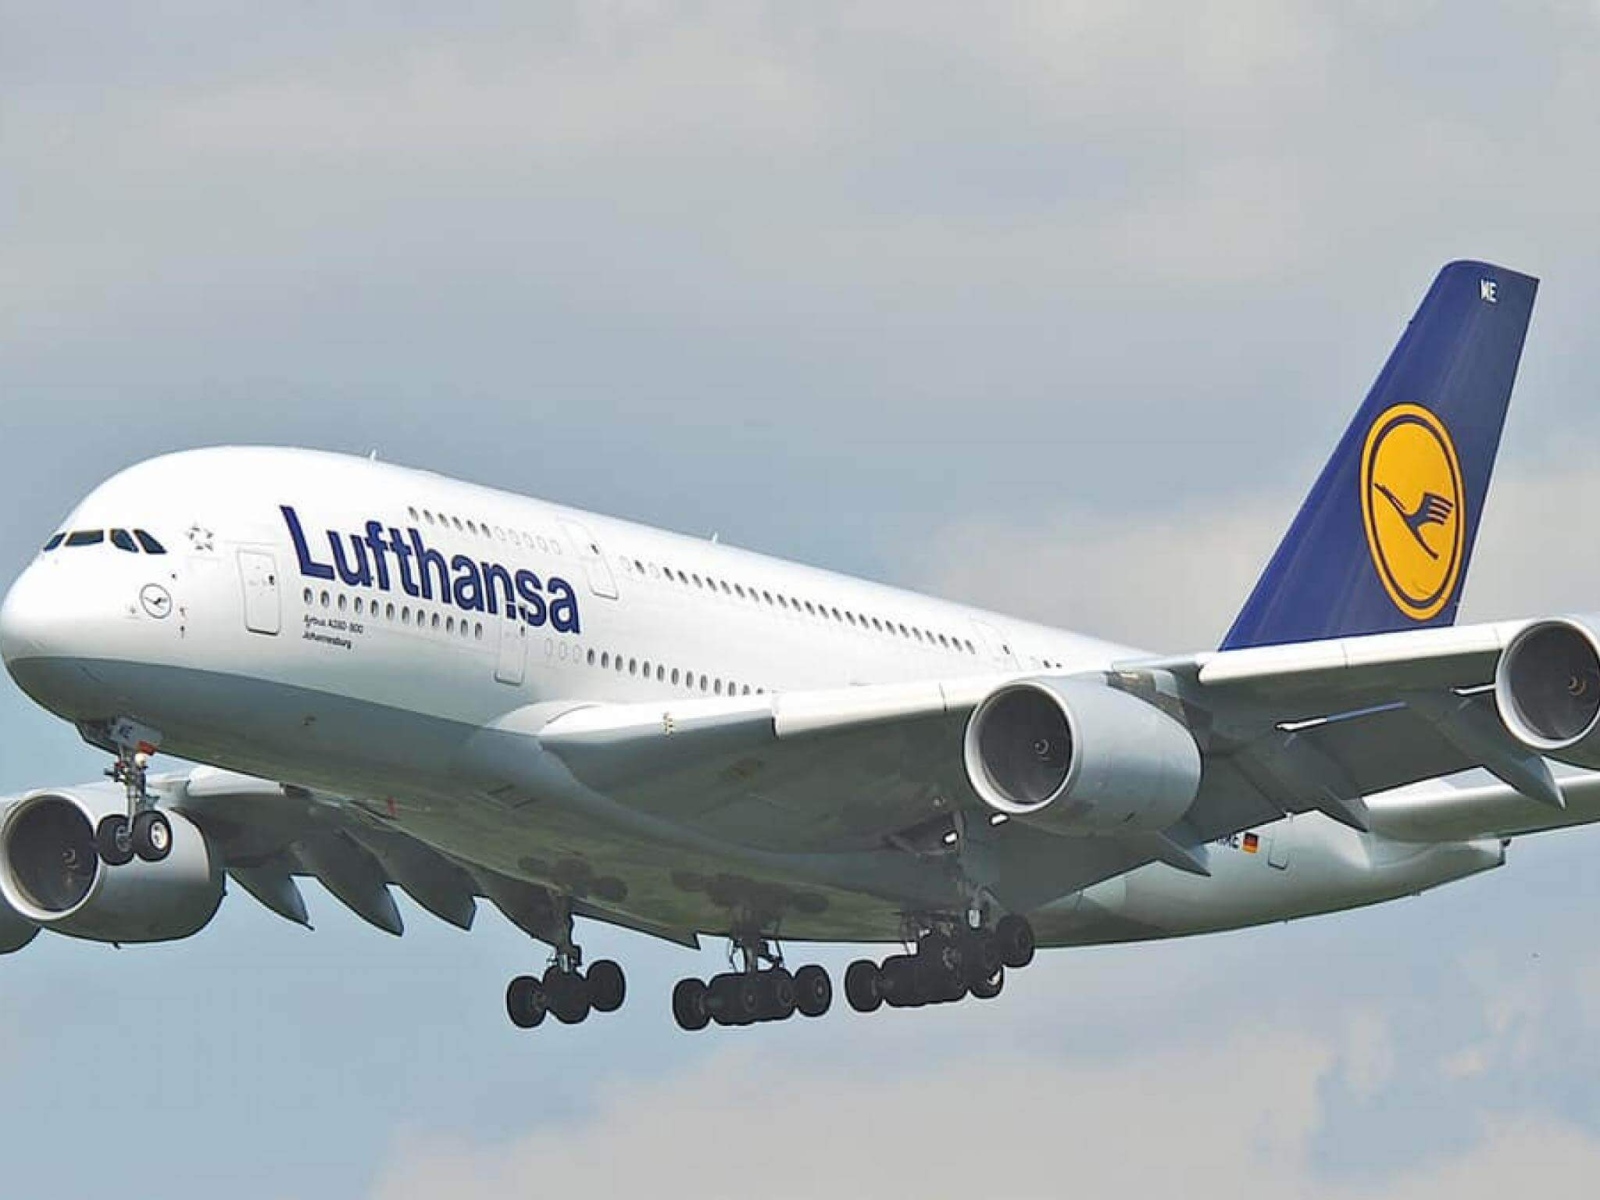 Германската авиокомпания Луфтханза Lufthansa отменя над 2000 полета на летищата